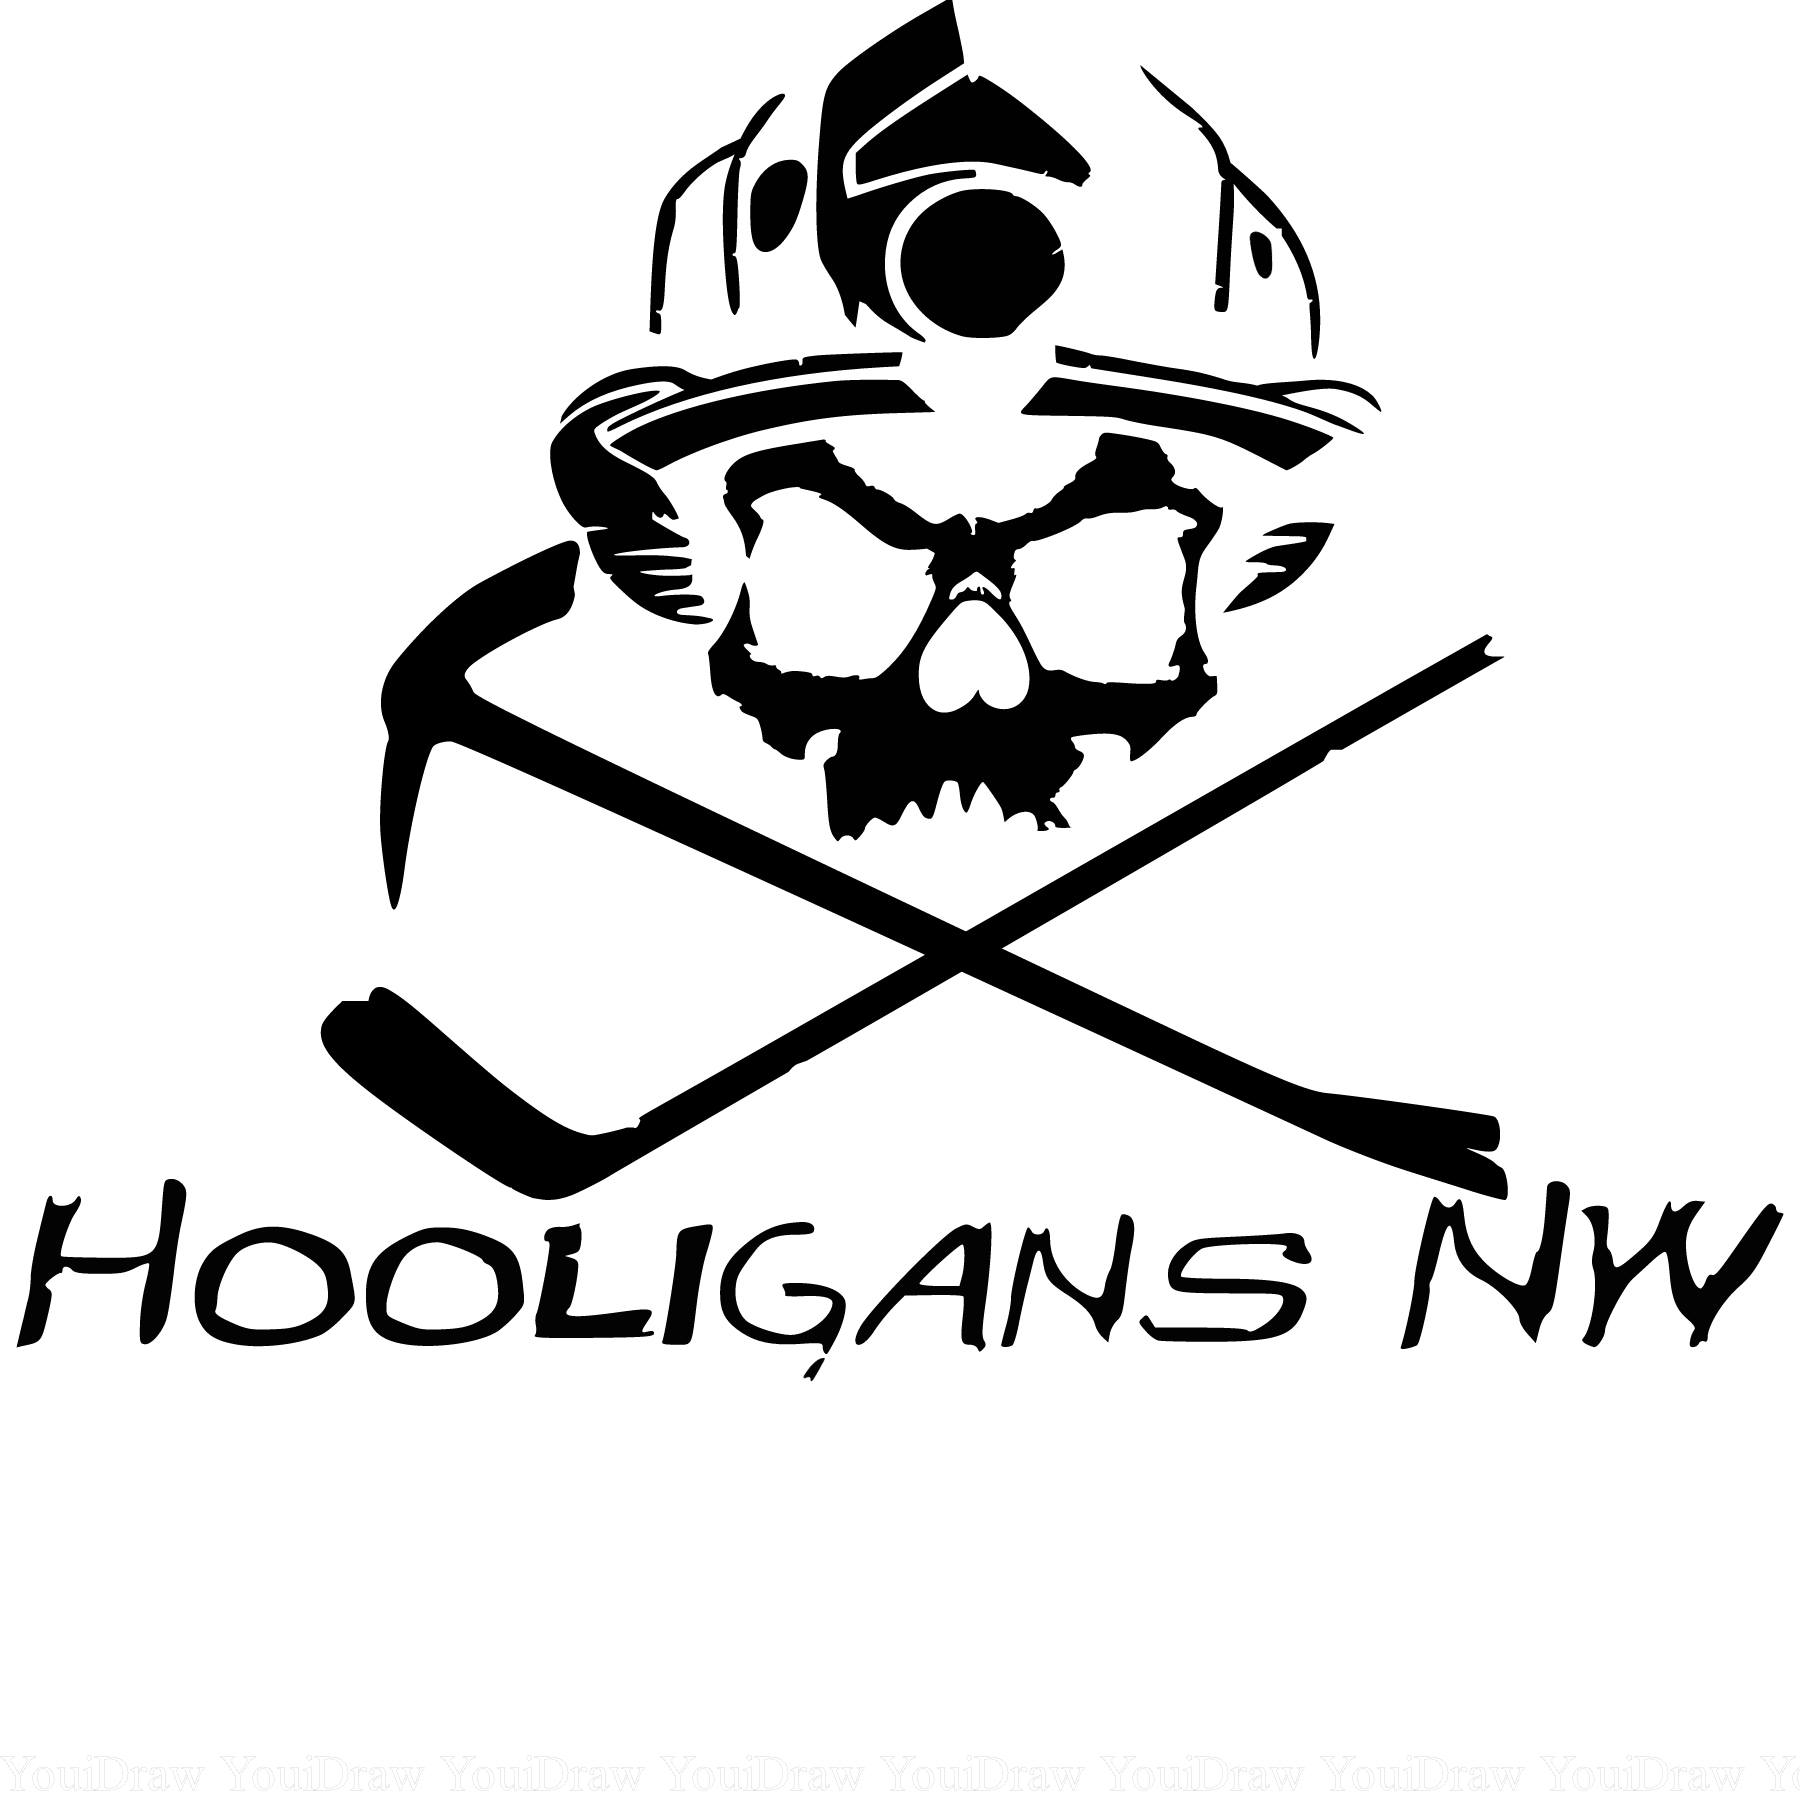 Team Scoring Leader: Hooligans